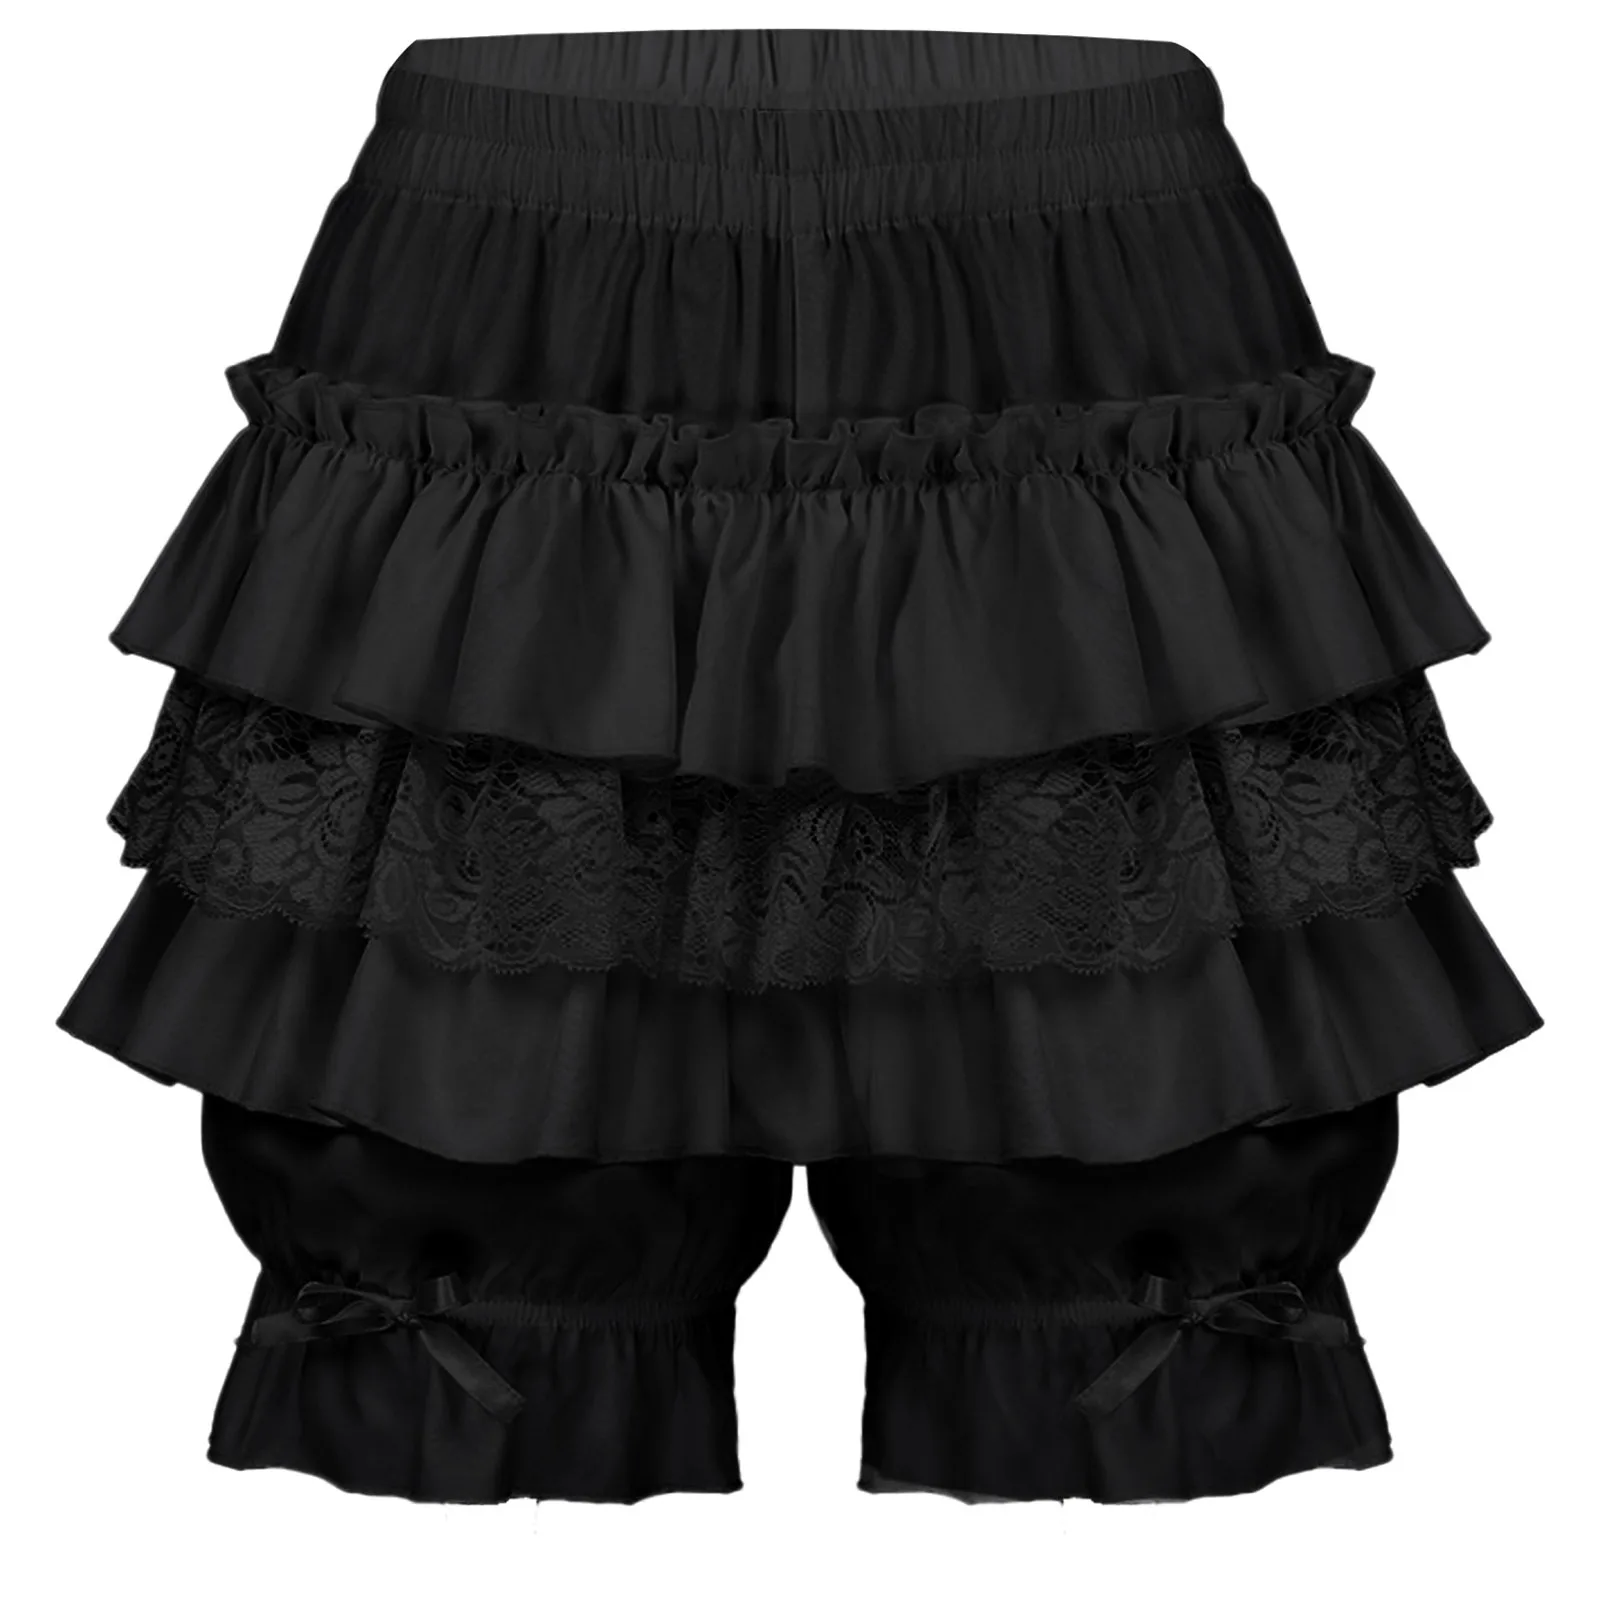 

Womens Gothic Victorian Bloomers Pantaloons Lolita Shorts Layered Ruffled Lace Trim Shorts Mid Waist Bowknot Pumpkin Pants